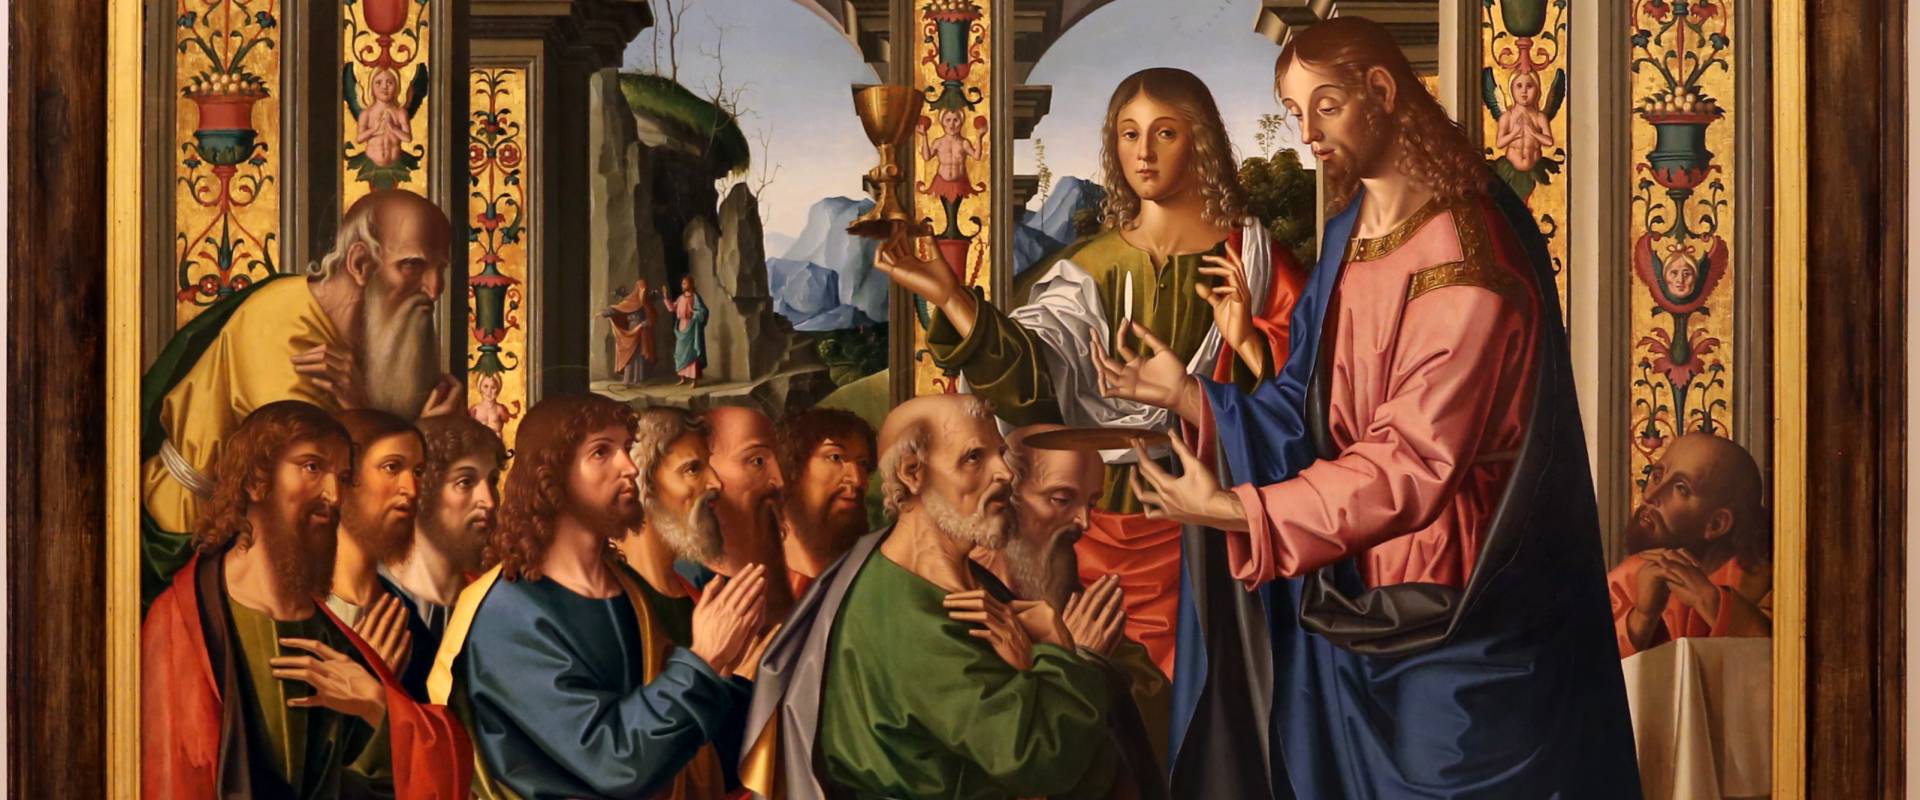 Marco palmezzano, comunione degli apostoli, 1506, dall'altare maggiore del duomo di forlì, 01 foto di Sailko